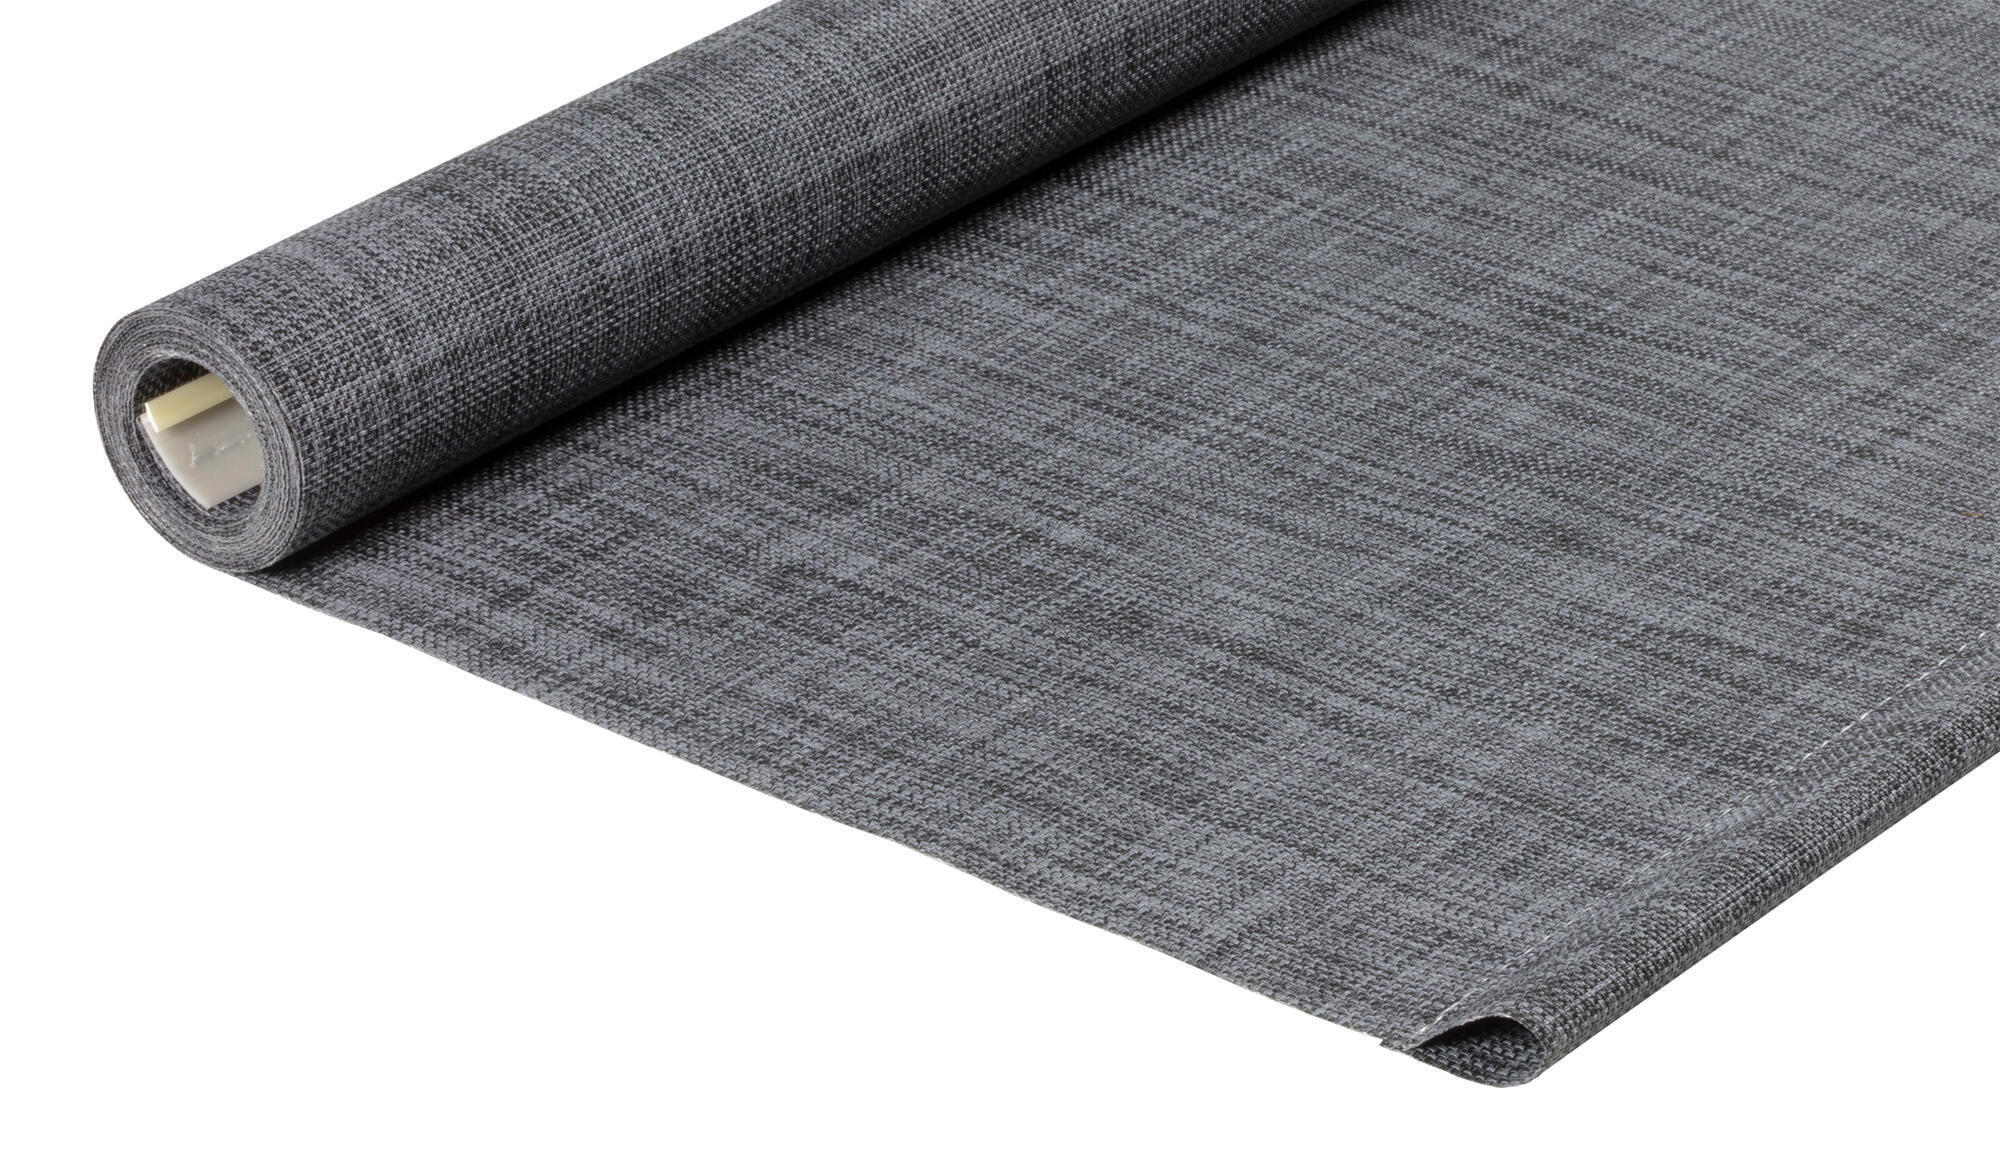 Tessuto per tende a rullo filtrante INSPIRE Puebla grigio / argento 55.8 x 190 cm - 2